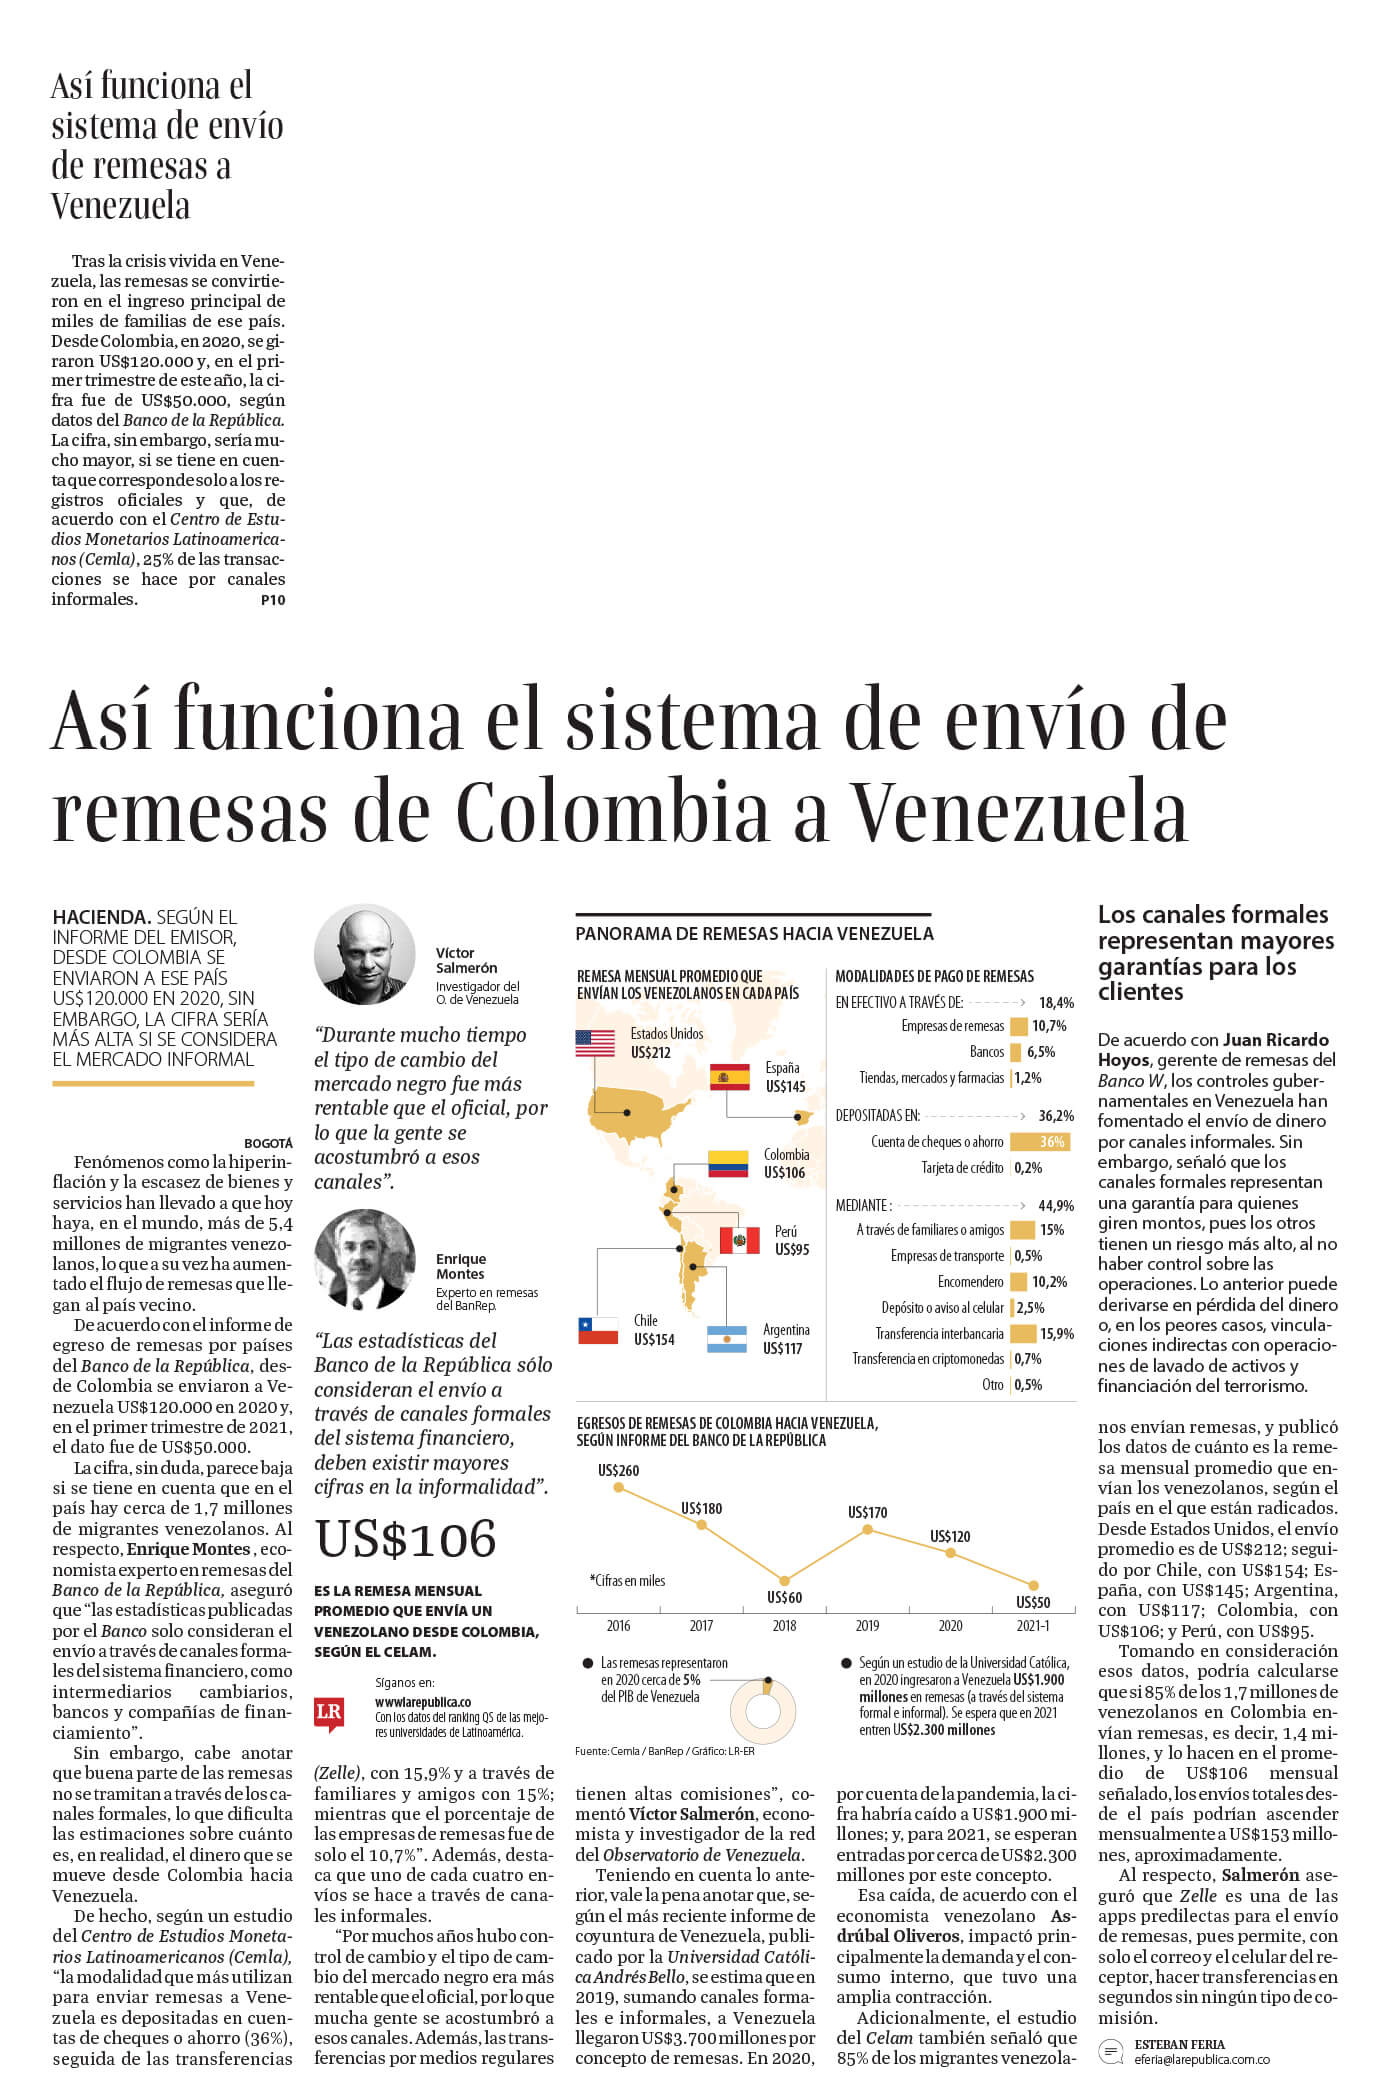 Así funciona el sistema de envío de remesas transferidas de Colombia a Venezuela. Se destaca declaraciones de Juan Ricardo Hoyos, Gerente de Remesas del Banco W.